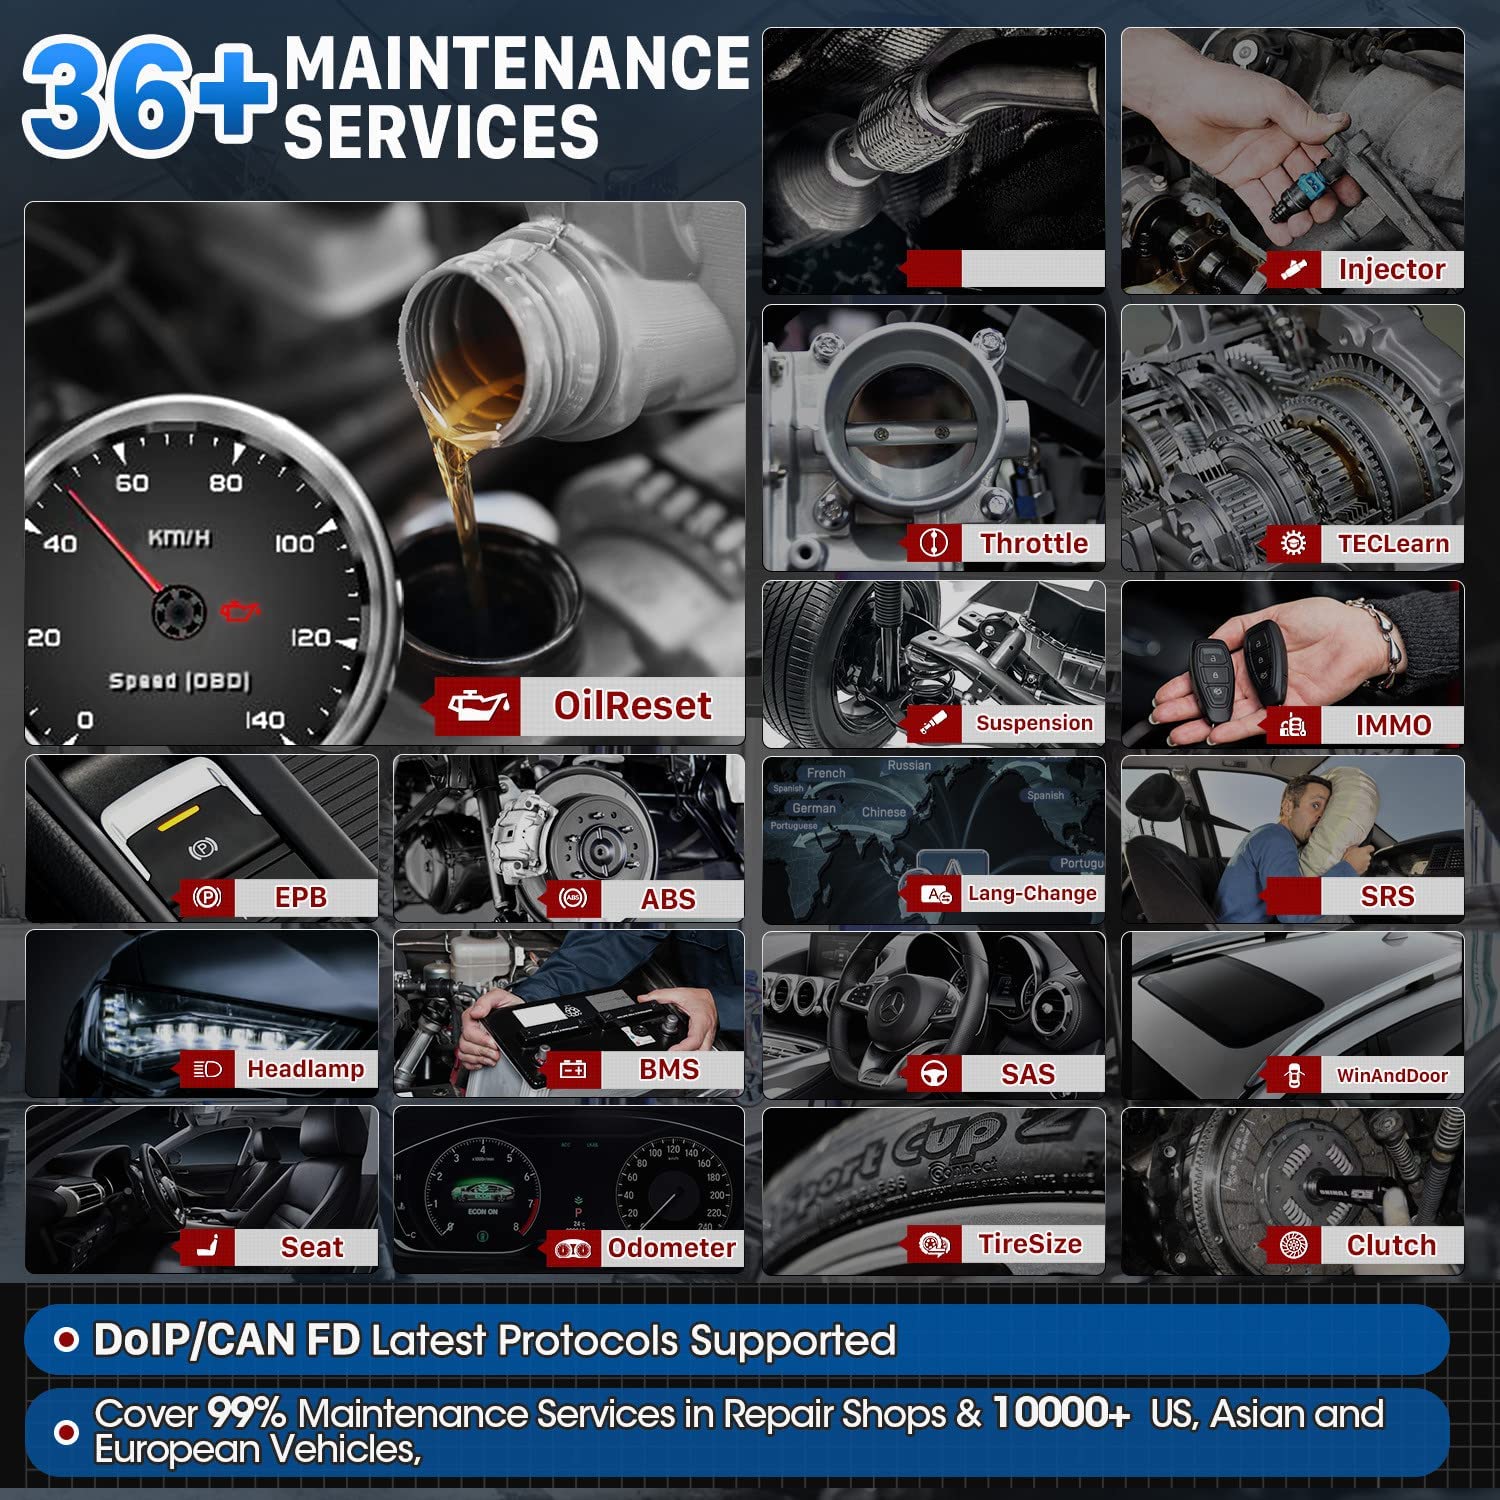 Autel MK906 Pro has 36+ maintenance services